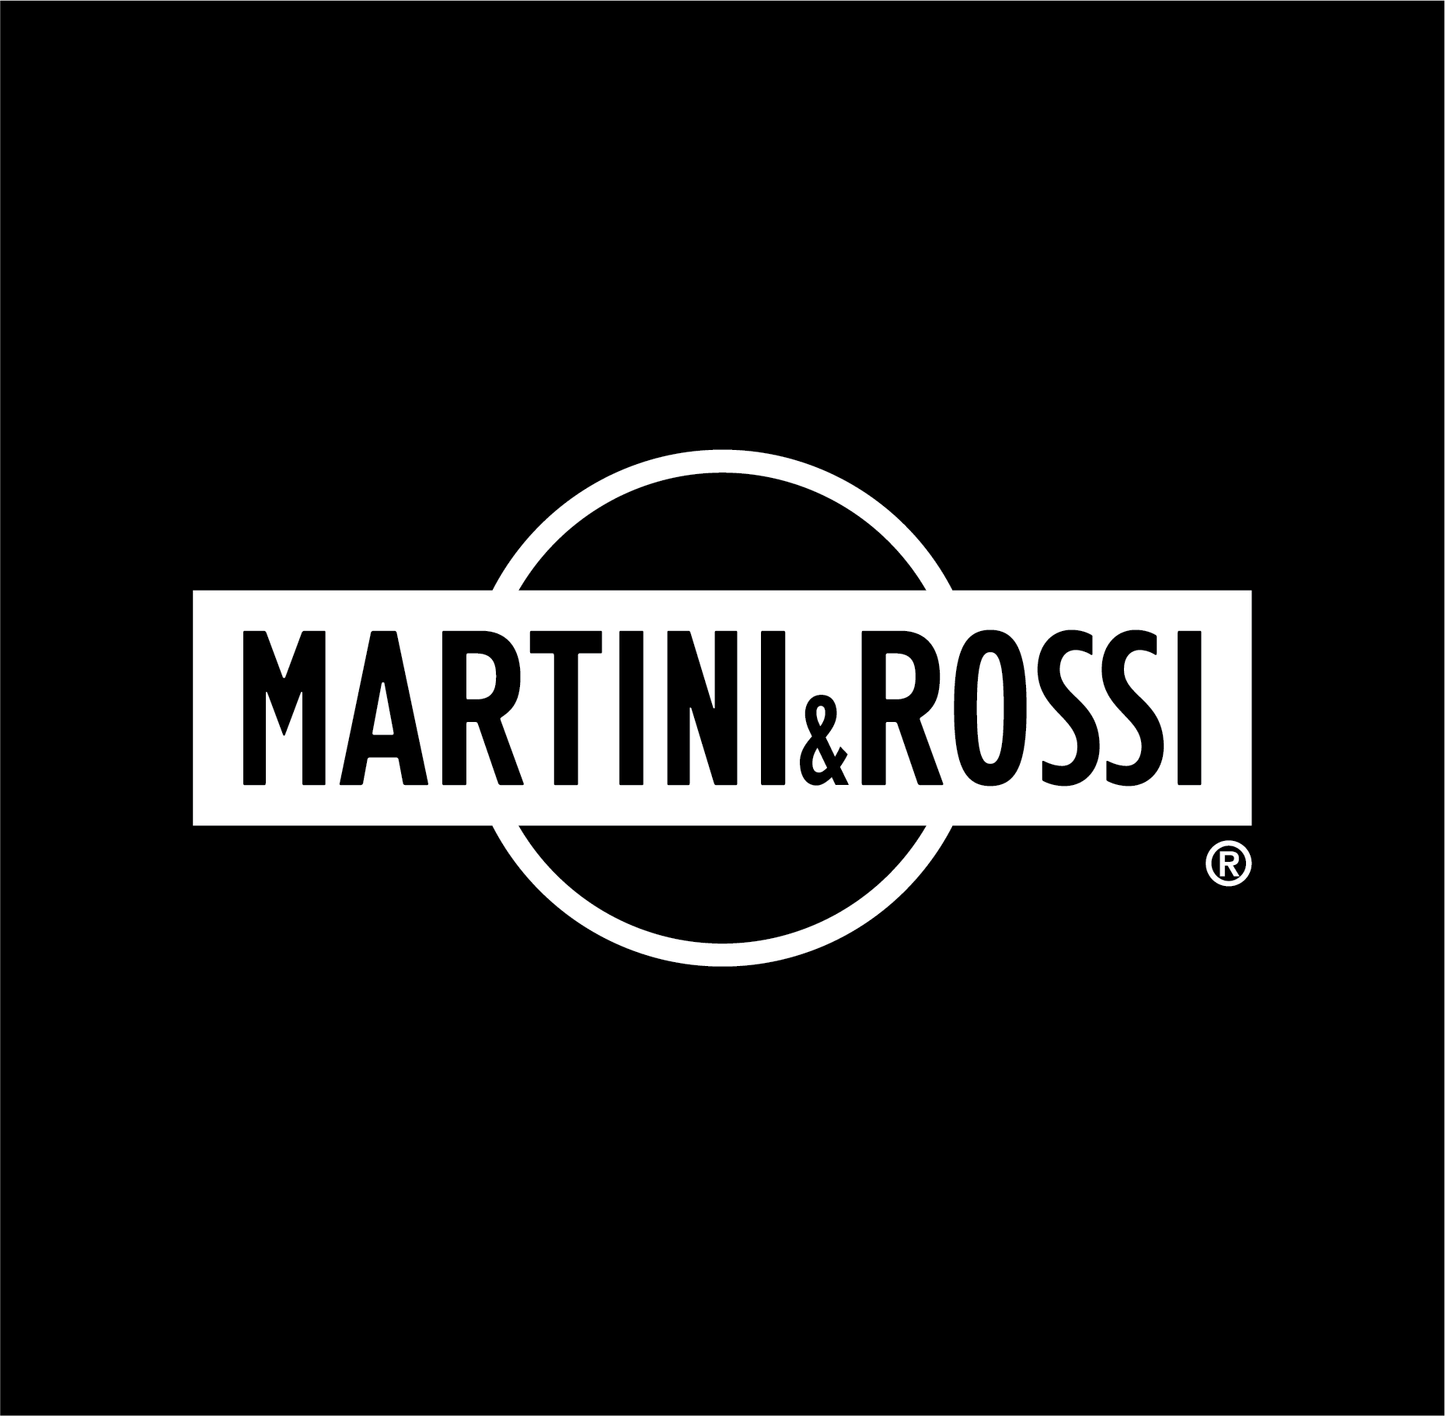 Martini & Rossi - Primary Logo - B&W